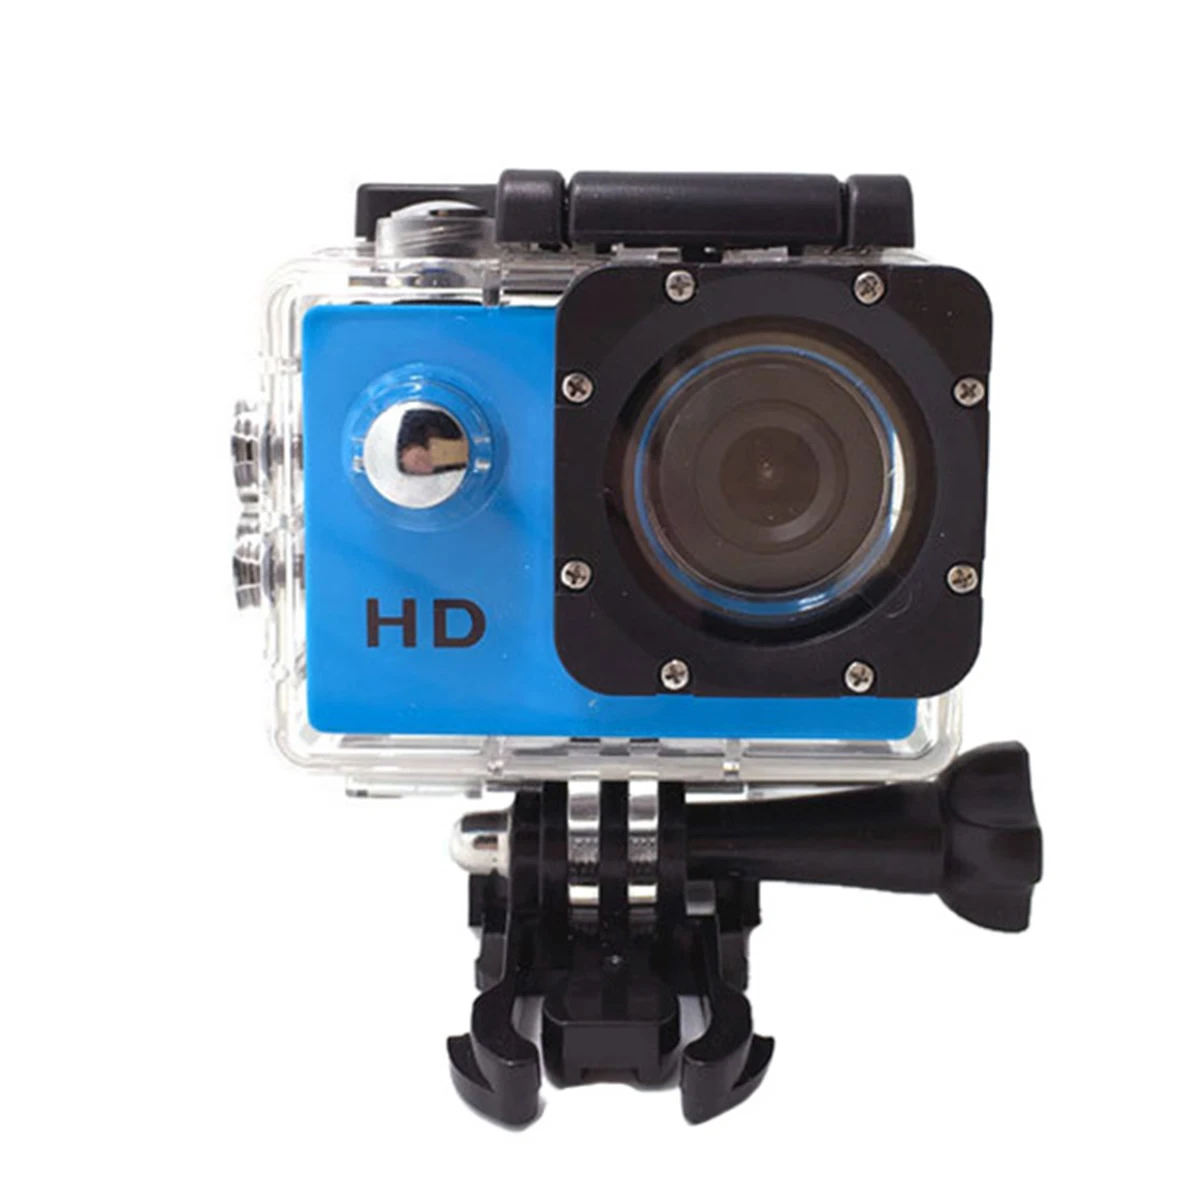 SJ4000 Экшн камера для дайвинга 30 м Водонепроницаемая 1080P Full HD подводная спортивная камера для шлема Спорт DV12MP фото пиксель